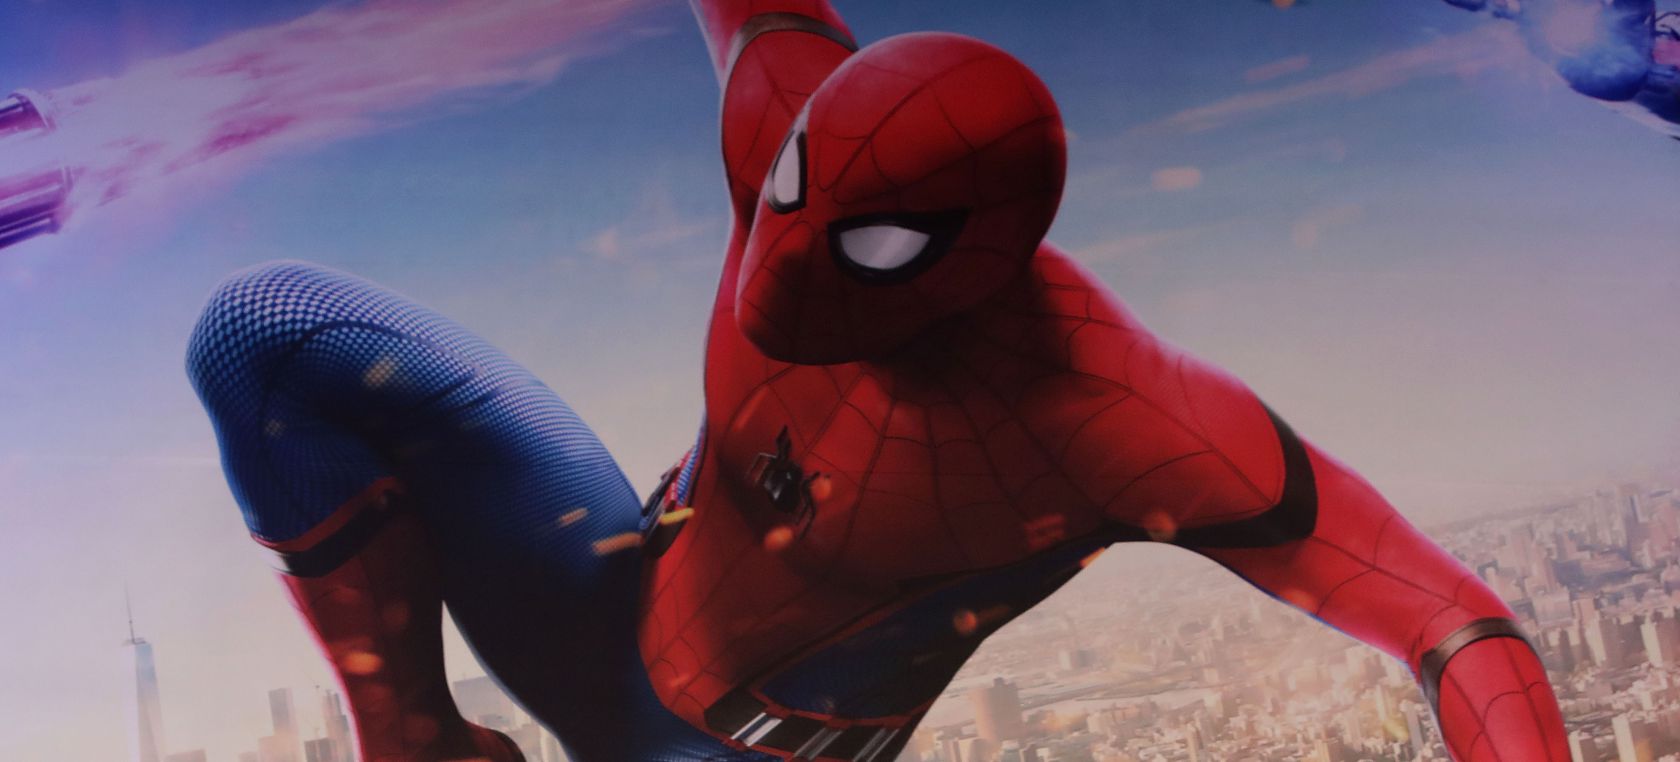 Spider-Man y Venom se reafirman en el MCU aterrizando en Disney